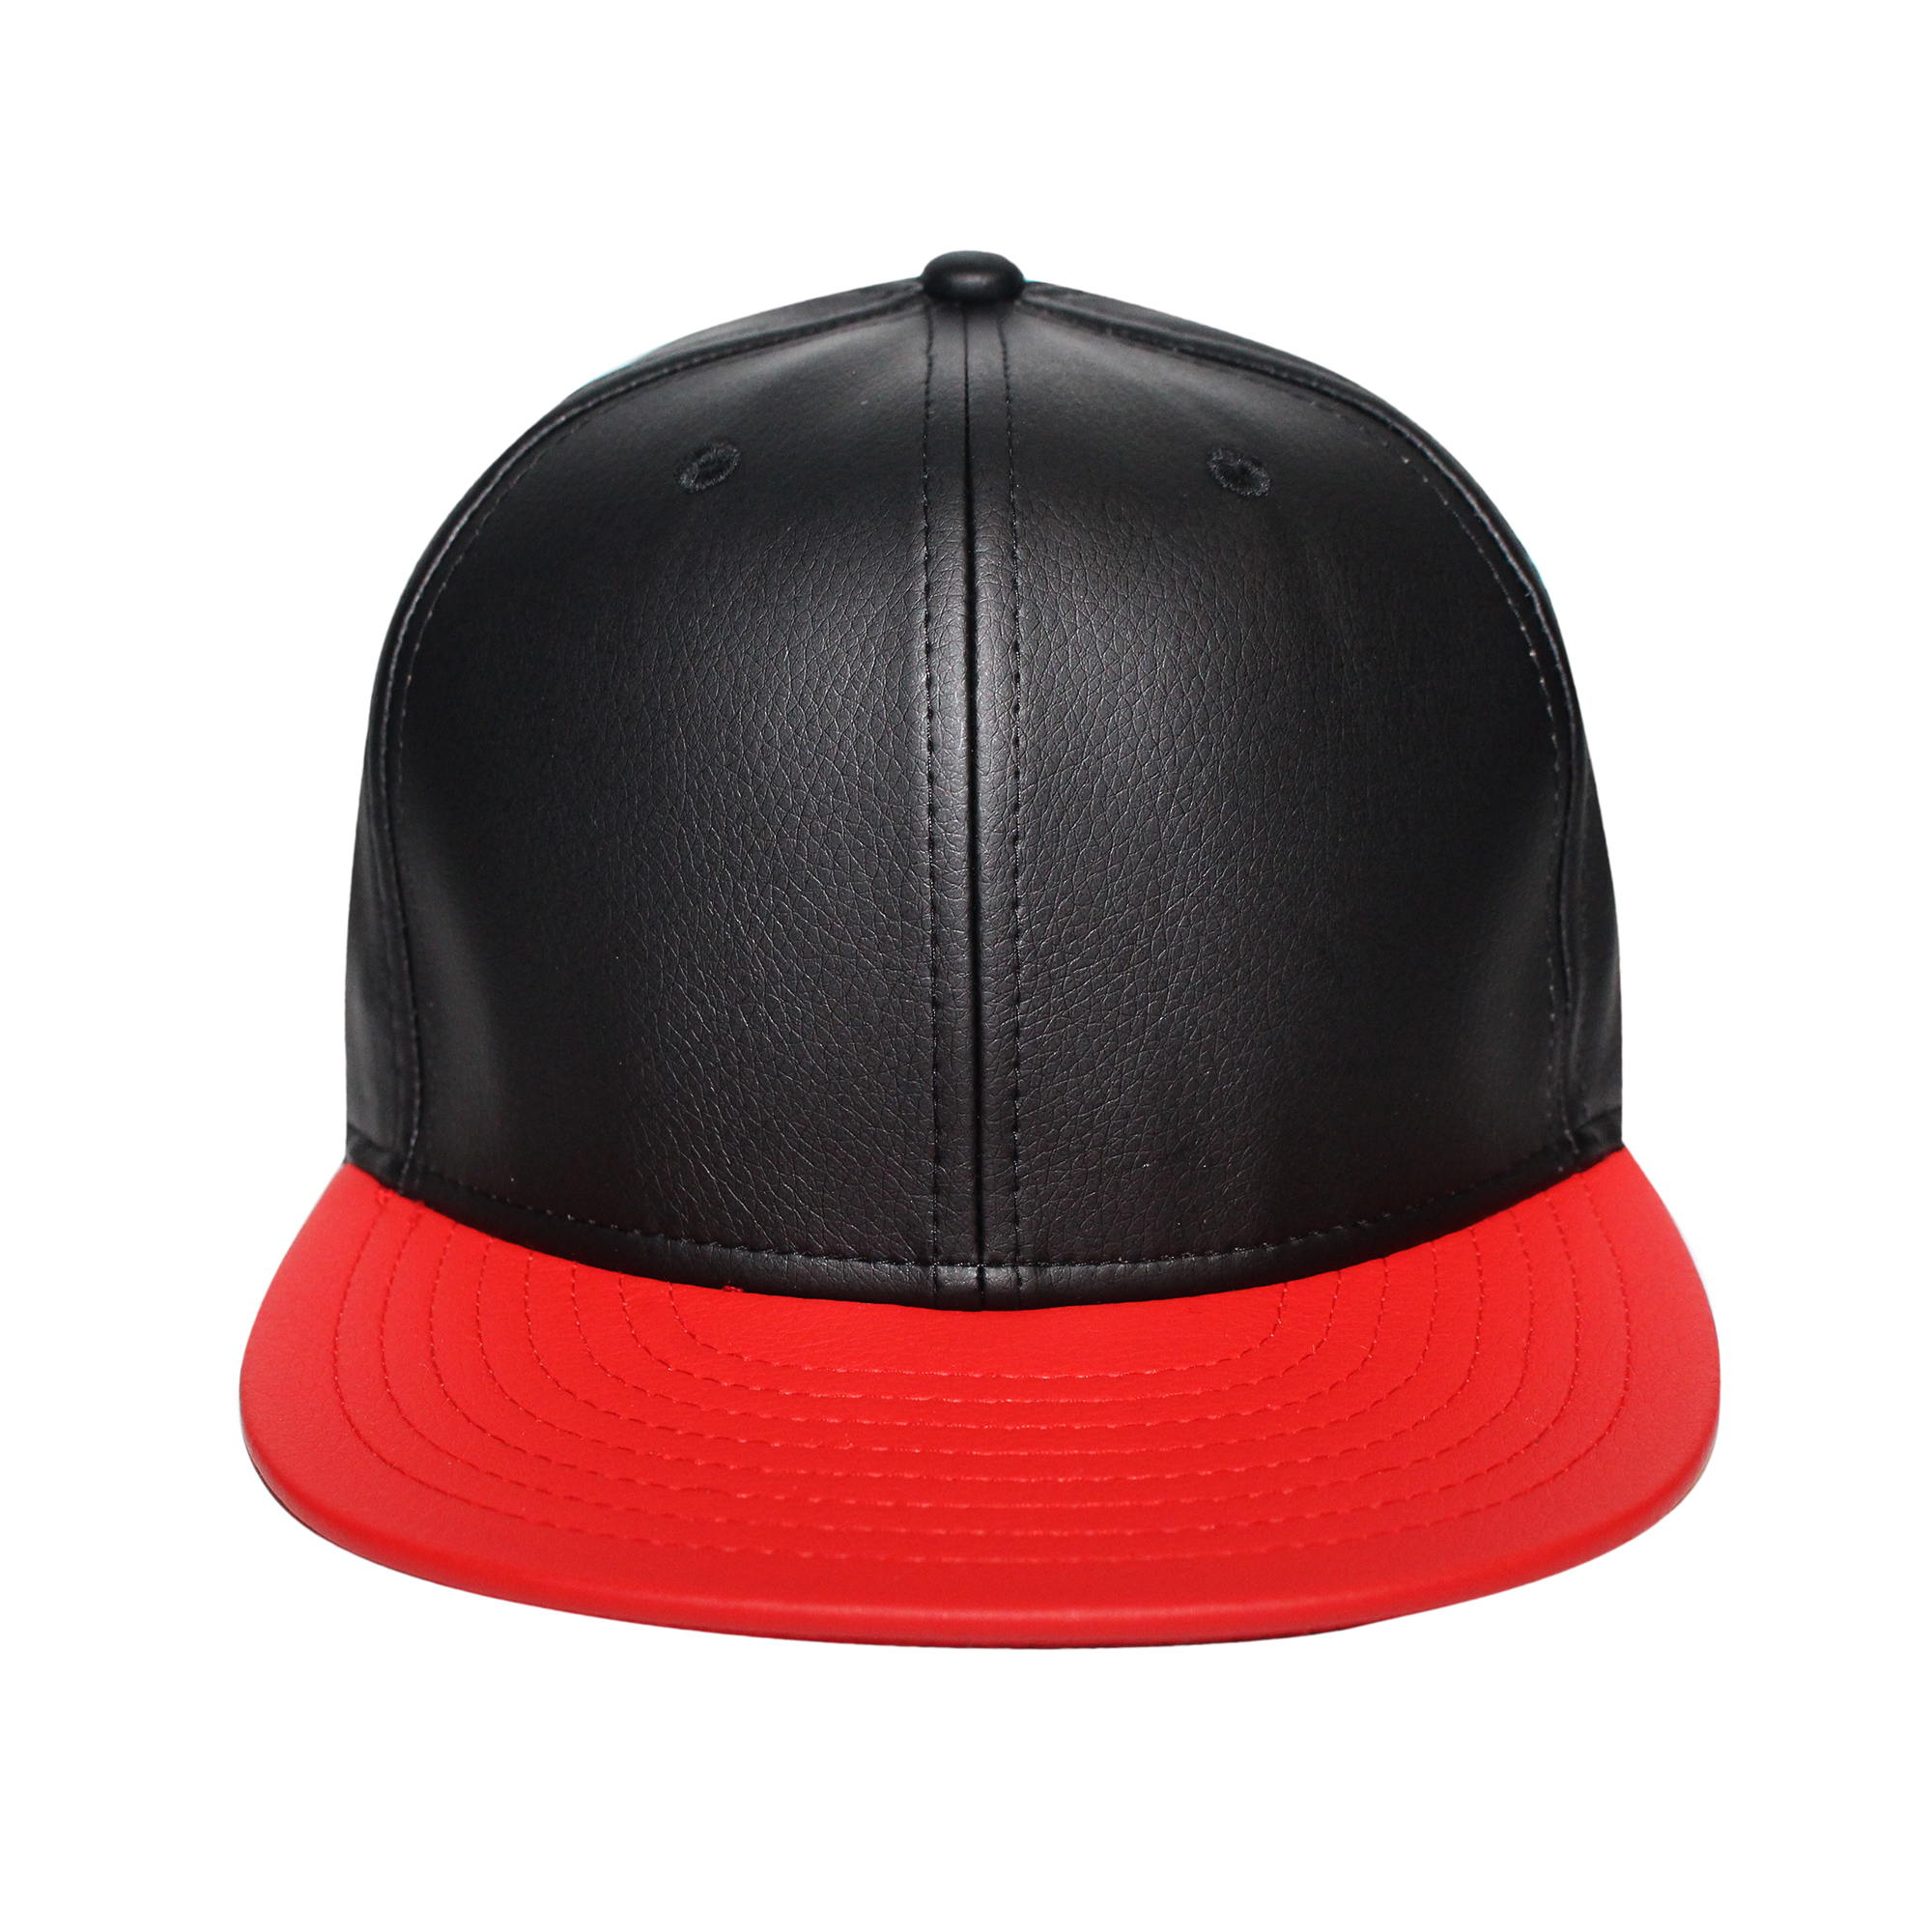 The Cap Guys Inspired Exclusives Origins Hat Jamaica Design